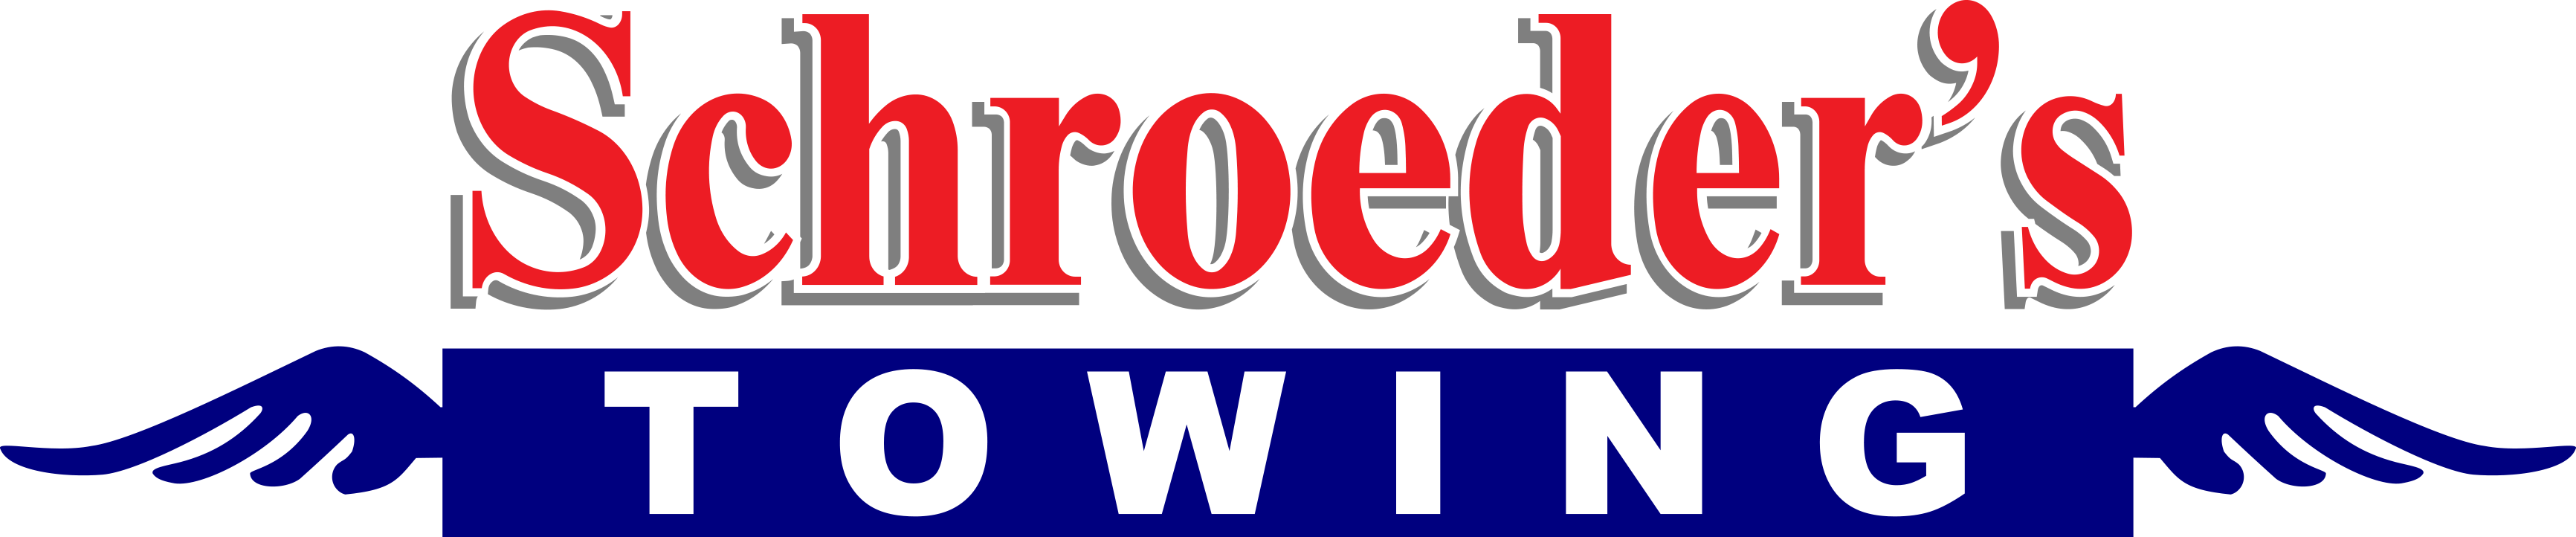 Schroeder's logo